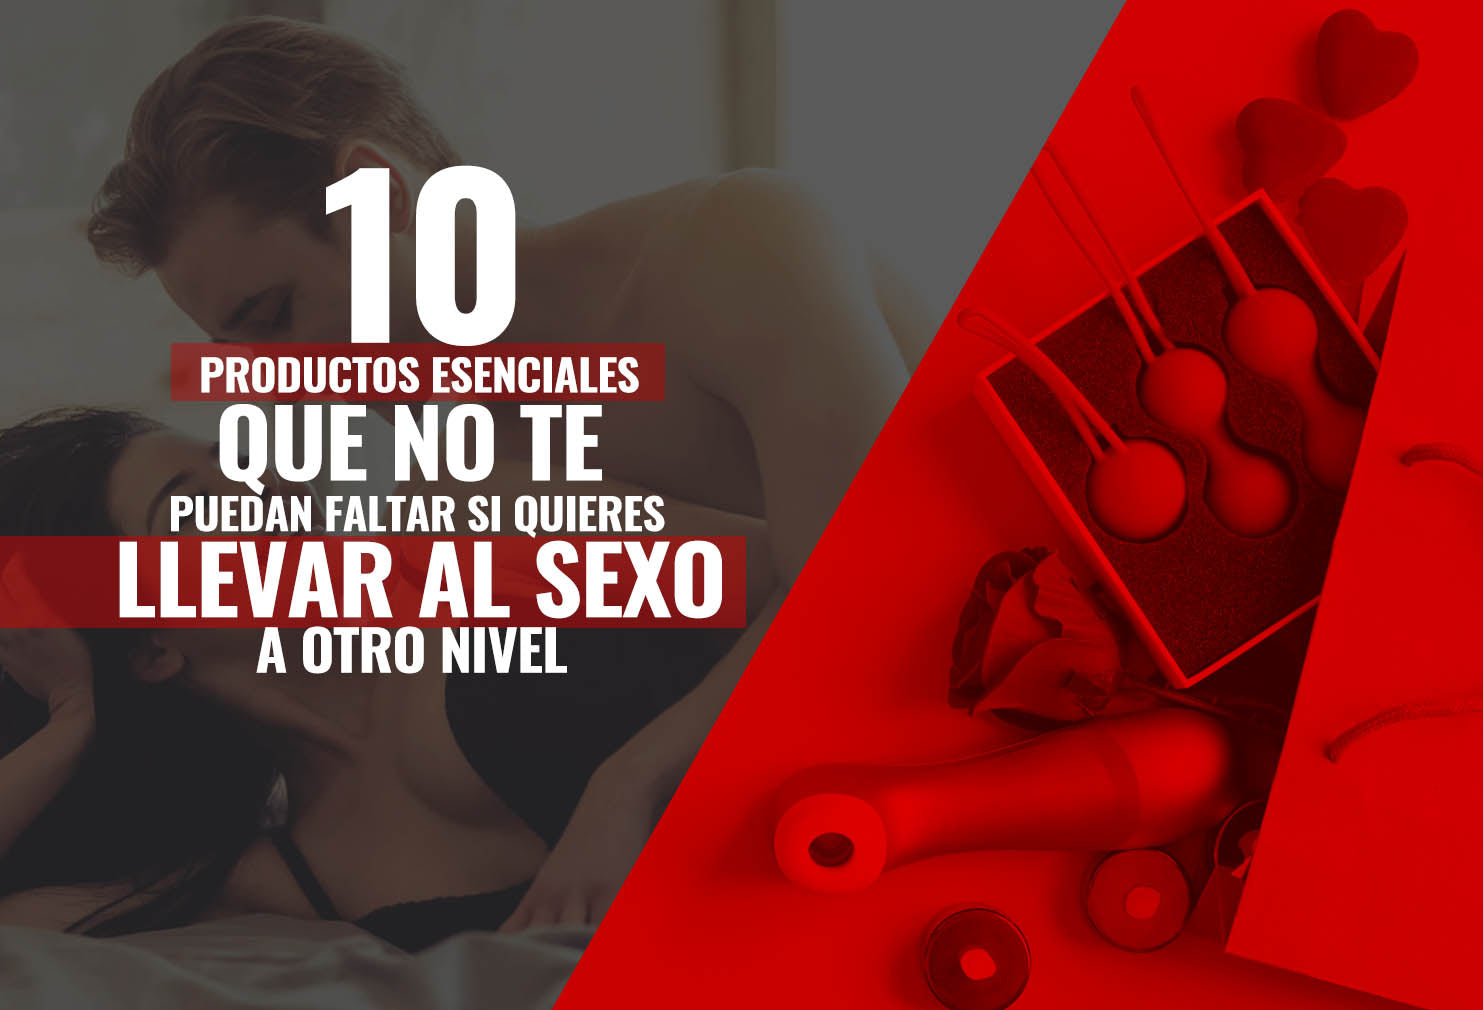 10 productos esenciales que no te pueden faltar si quieres llevar el sexo a otro nivel.